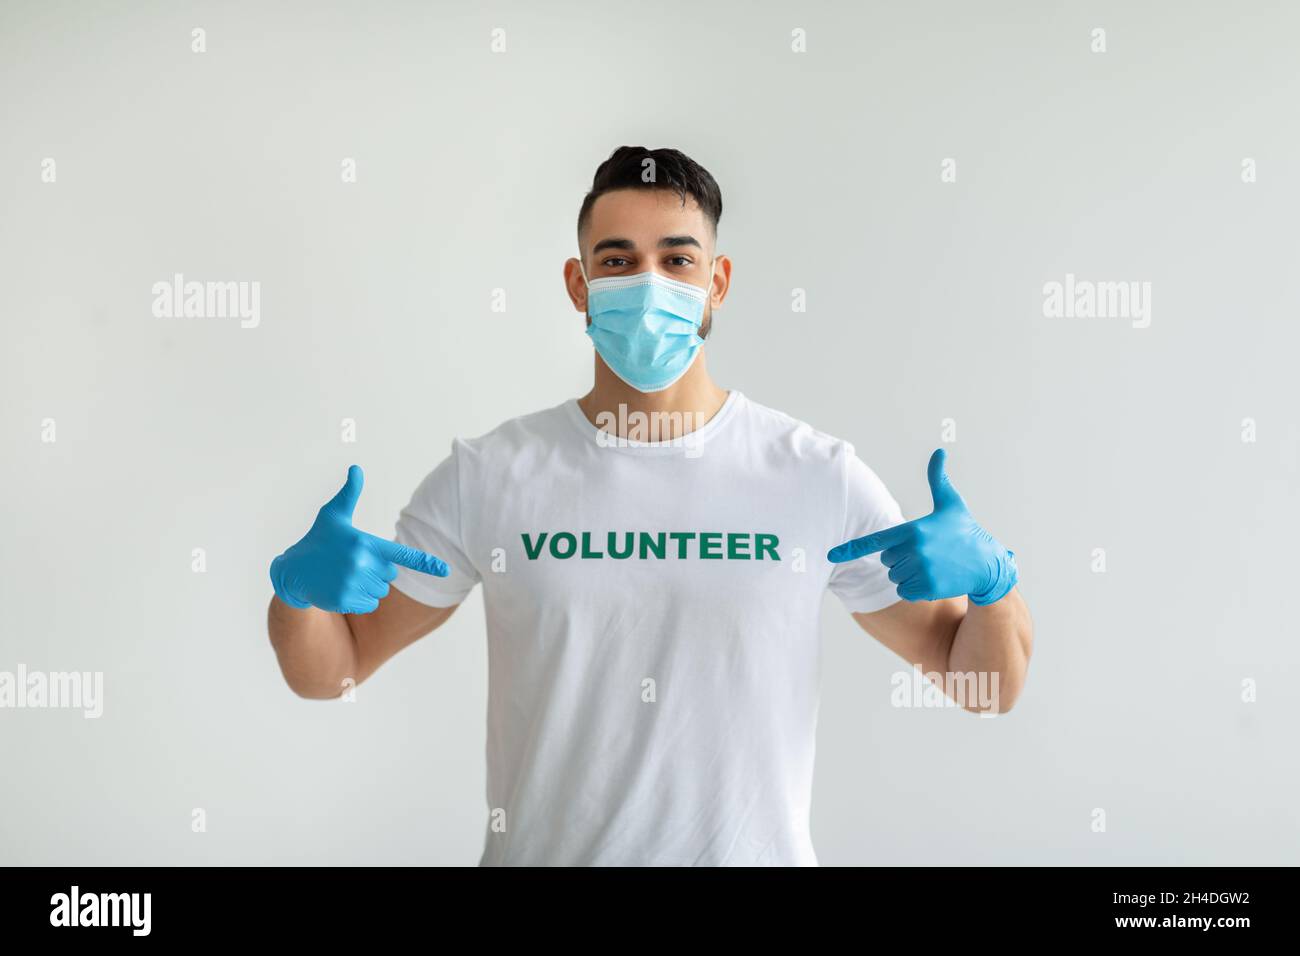 Sehr stolz, ehrenamtlich zu sein. Junger arabischer Mann mit medizinischer Maske und Handschuhen, die auf seine Uniform zeigen, über einer hellen Wand positioniert Stockfoto